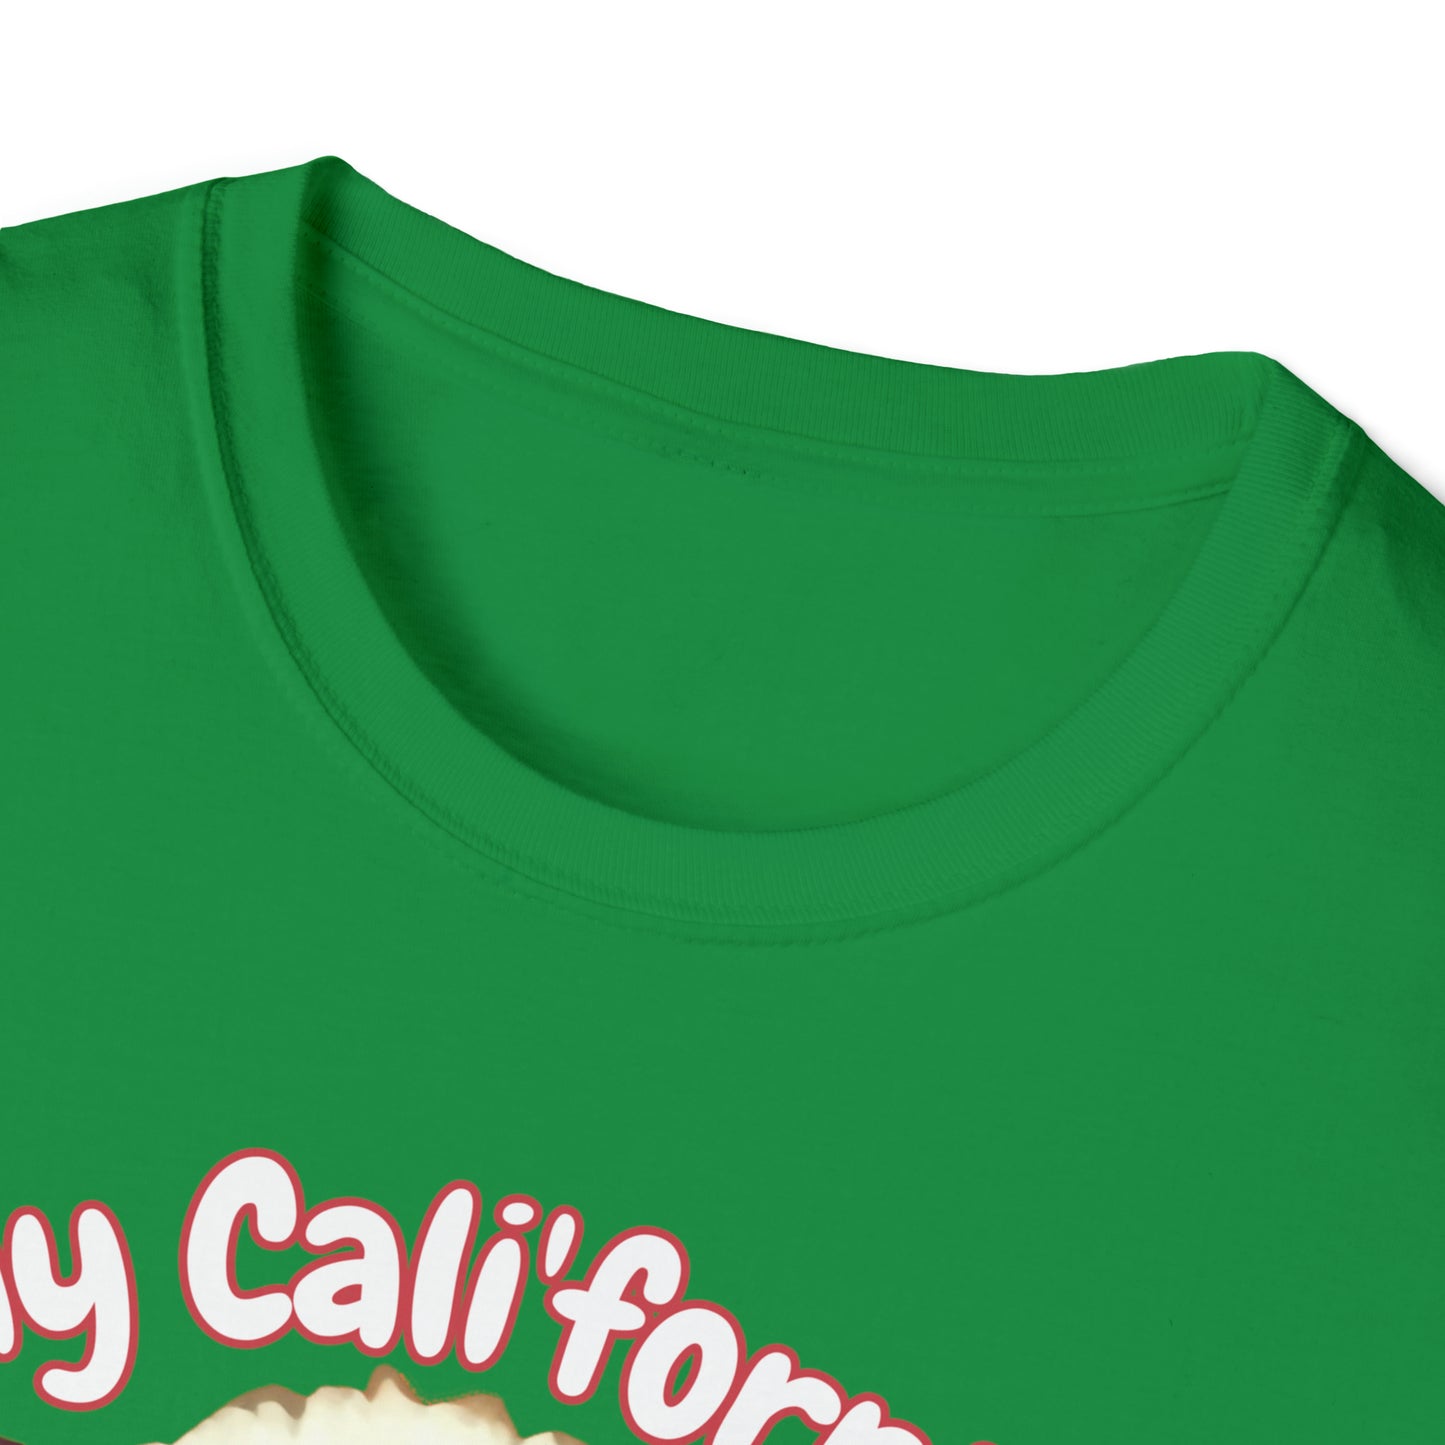 Copy of "Cali'fornia Rae of Sunshine" Dog Unisex Softstyle T-Shirt